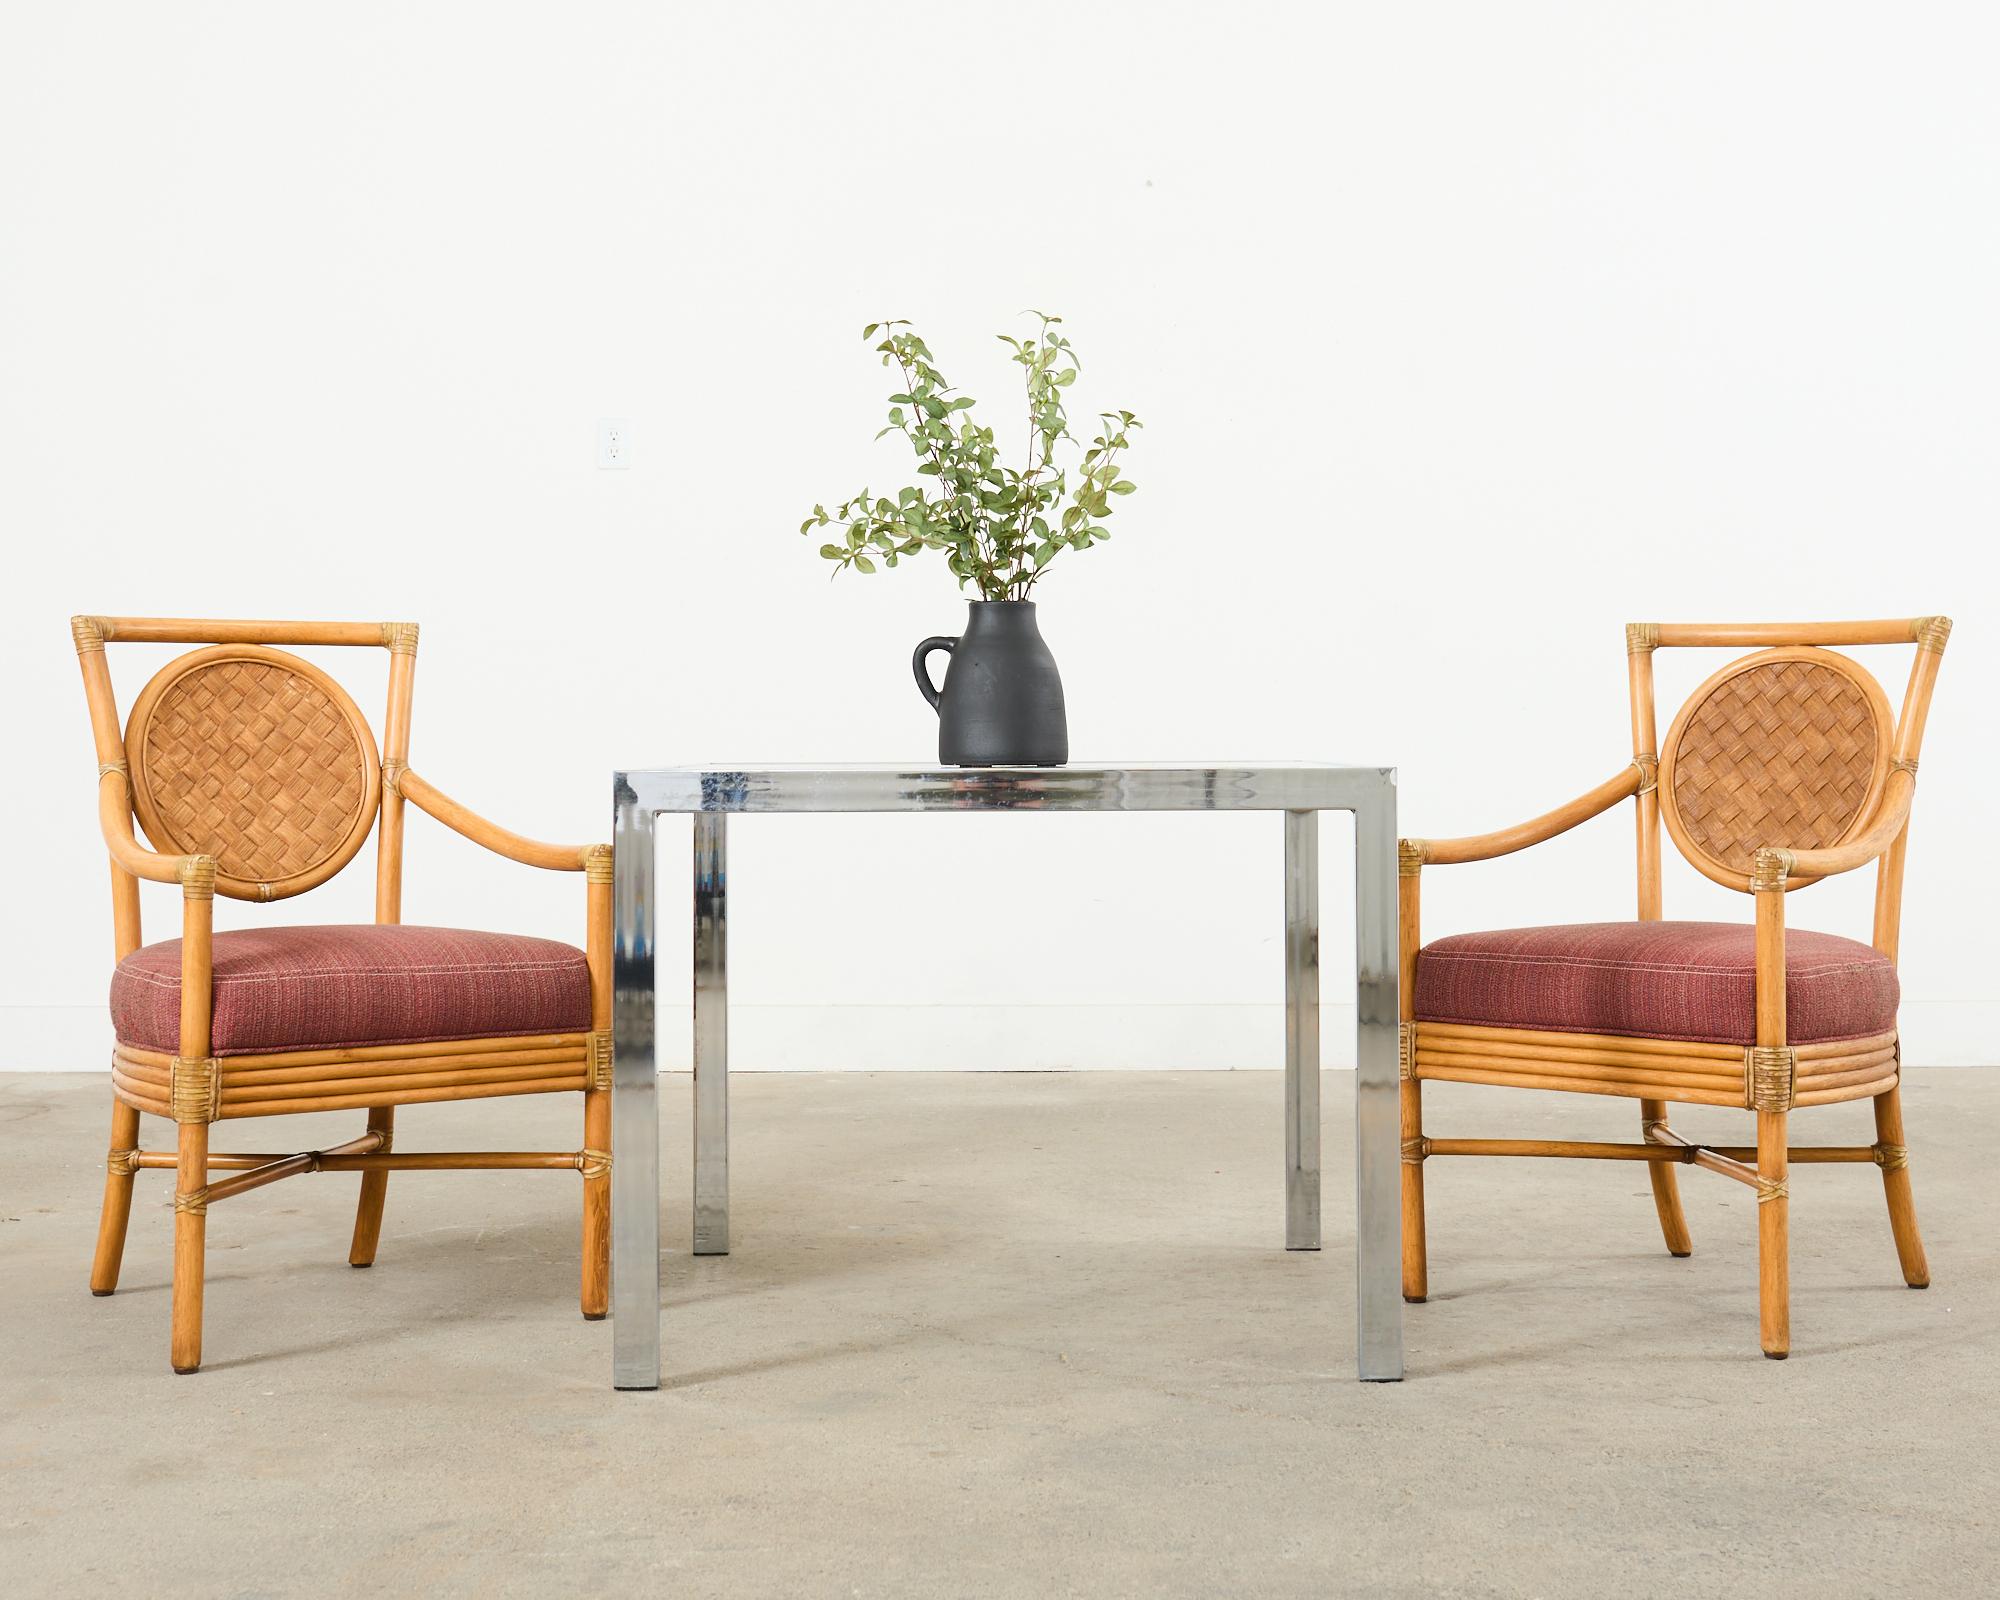 Rare ensemble de six fauteuils de salon (modèle #MCM222B) conçu par Orlando Diaz-Azcuy pour McGuire. Fabriqué dans le style moderne organique côtier californien avec une finition naturelle sur le rotin. Les cadres sont dotés d'un dos carré